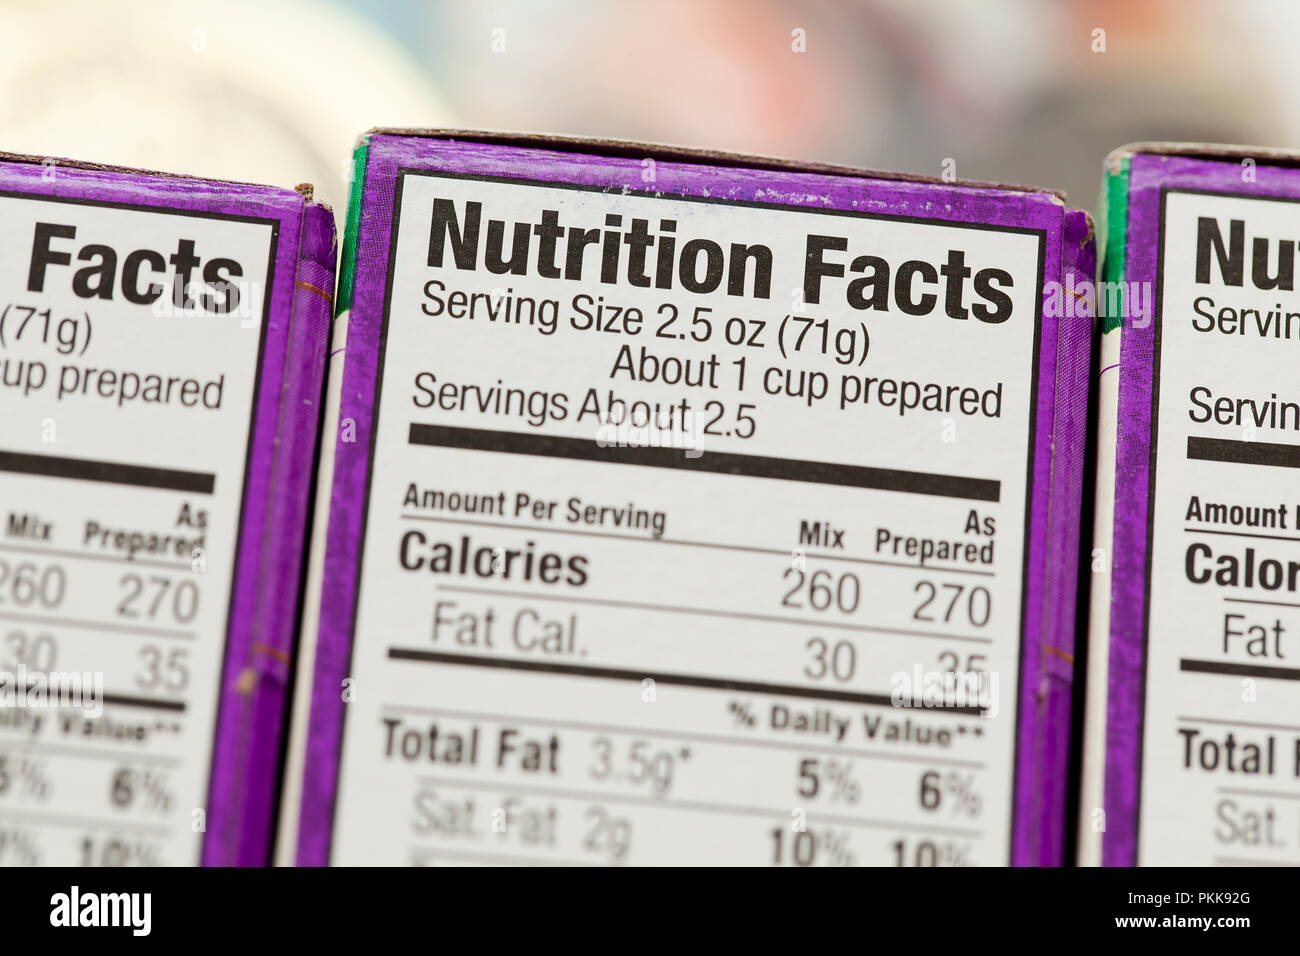 L'étiquette nutritionnelle sur les boîtes (sur la nutrition, de l'information nutritionnelle) - USA Banque D'Images